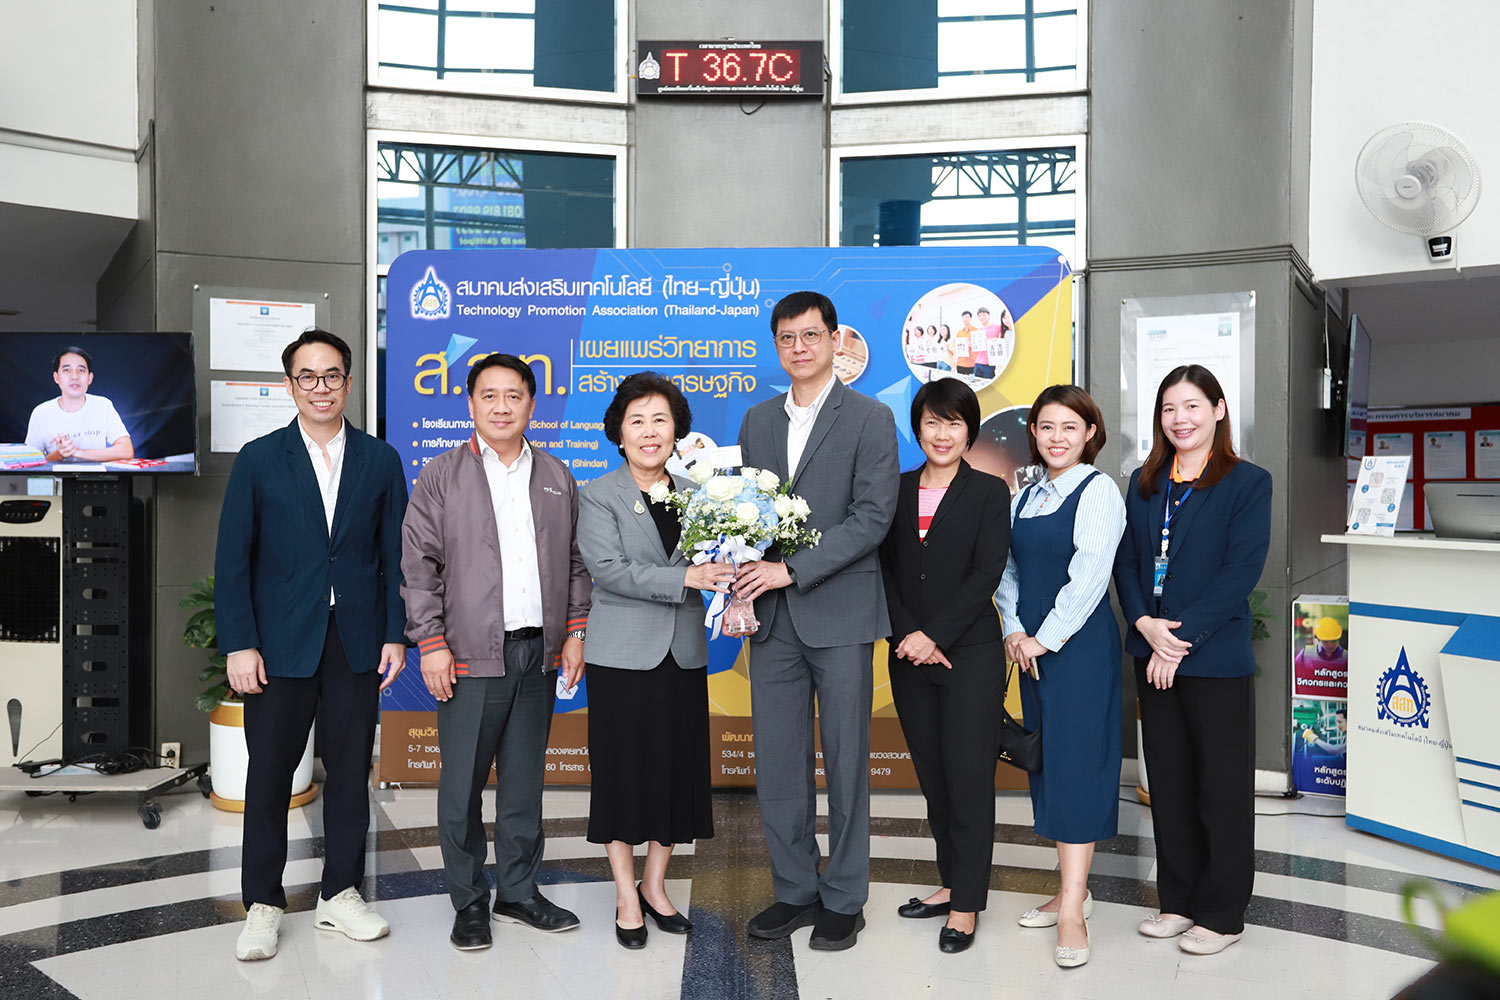 ส.ส.ท. ให้การต้อนรับ บริษัท อินฟอร์มา มาร์เก็ตส์ (ประเทศไทย) เพื่อหารือด้านความร่วมมือในการสนับสนุนการจัดงาน Mira and Subcon Thailand: The East